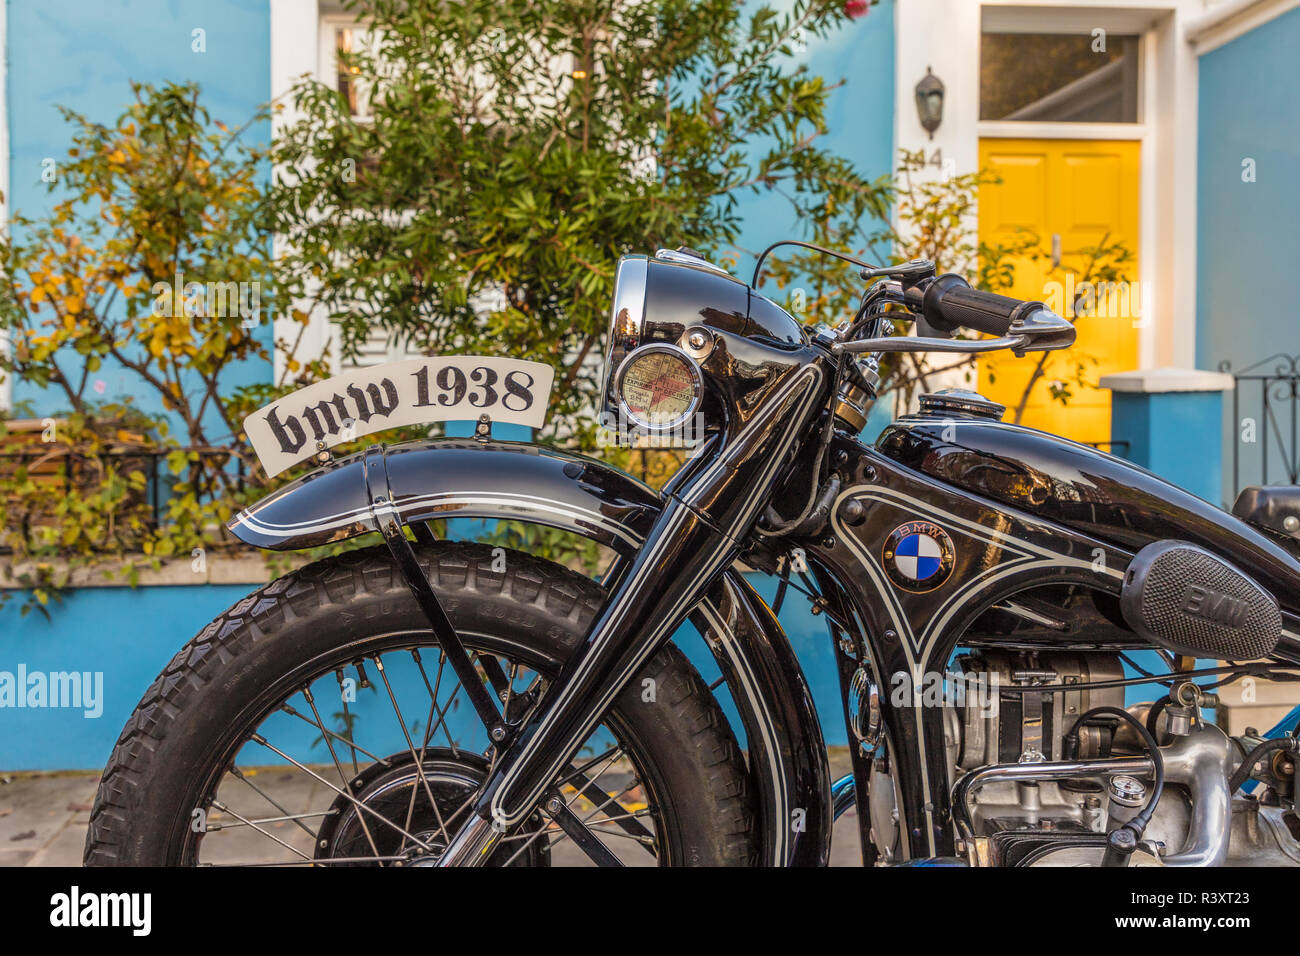 Eine schöne alte BMW Motorrad Stockfotografie - Alamy